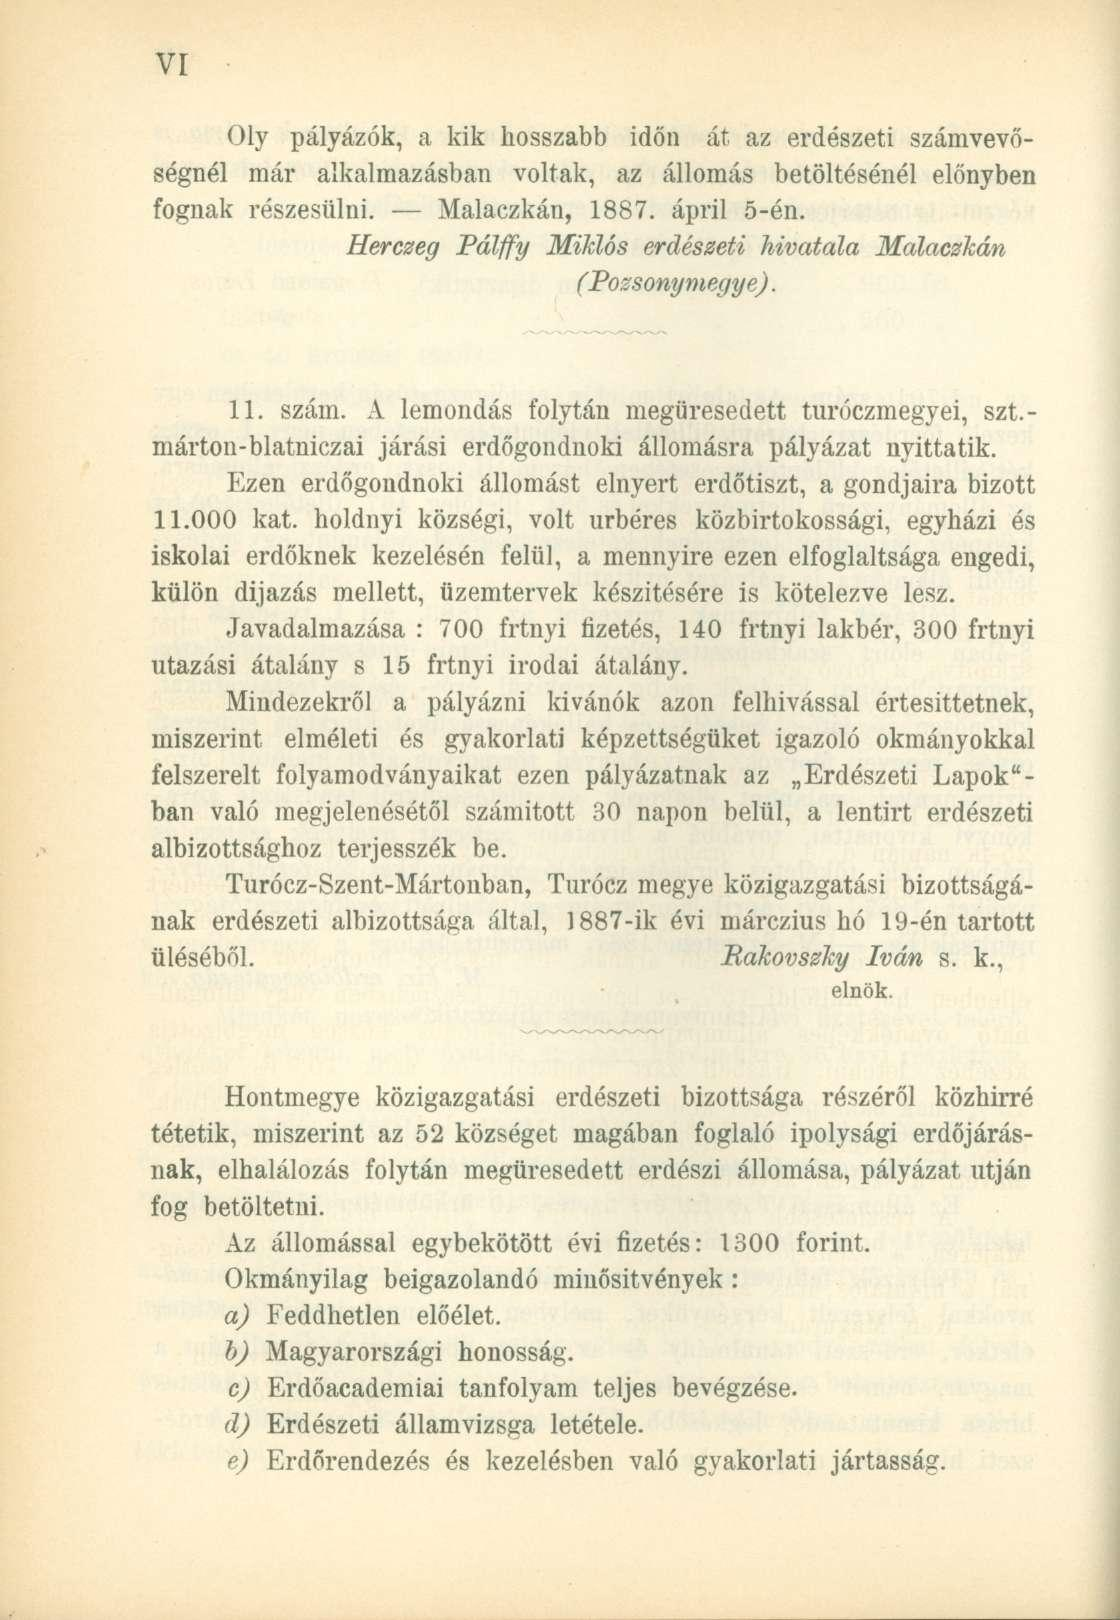 Oly pályázók, a kik hosszabb időn át az erdészeti számvevőségnél már alkalmazásban voltak, az állomás betöltésénél előnyben fognak részesülni. Malaczkán, 1887. ápril 5-én.